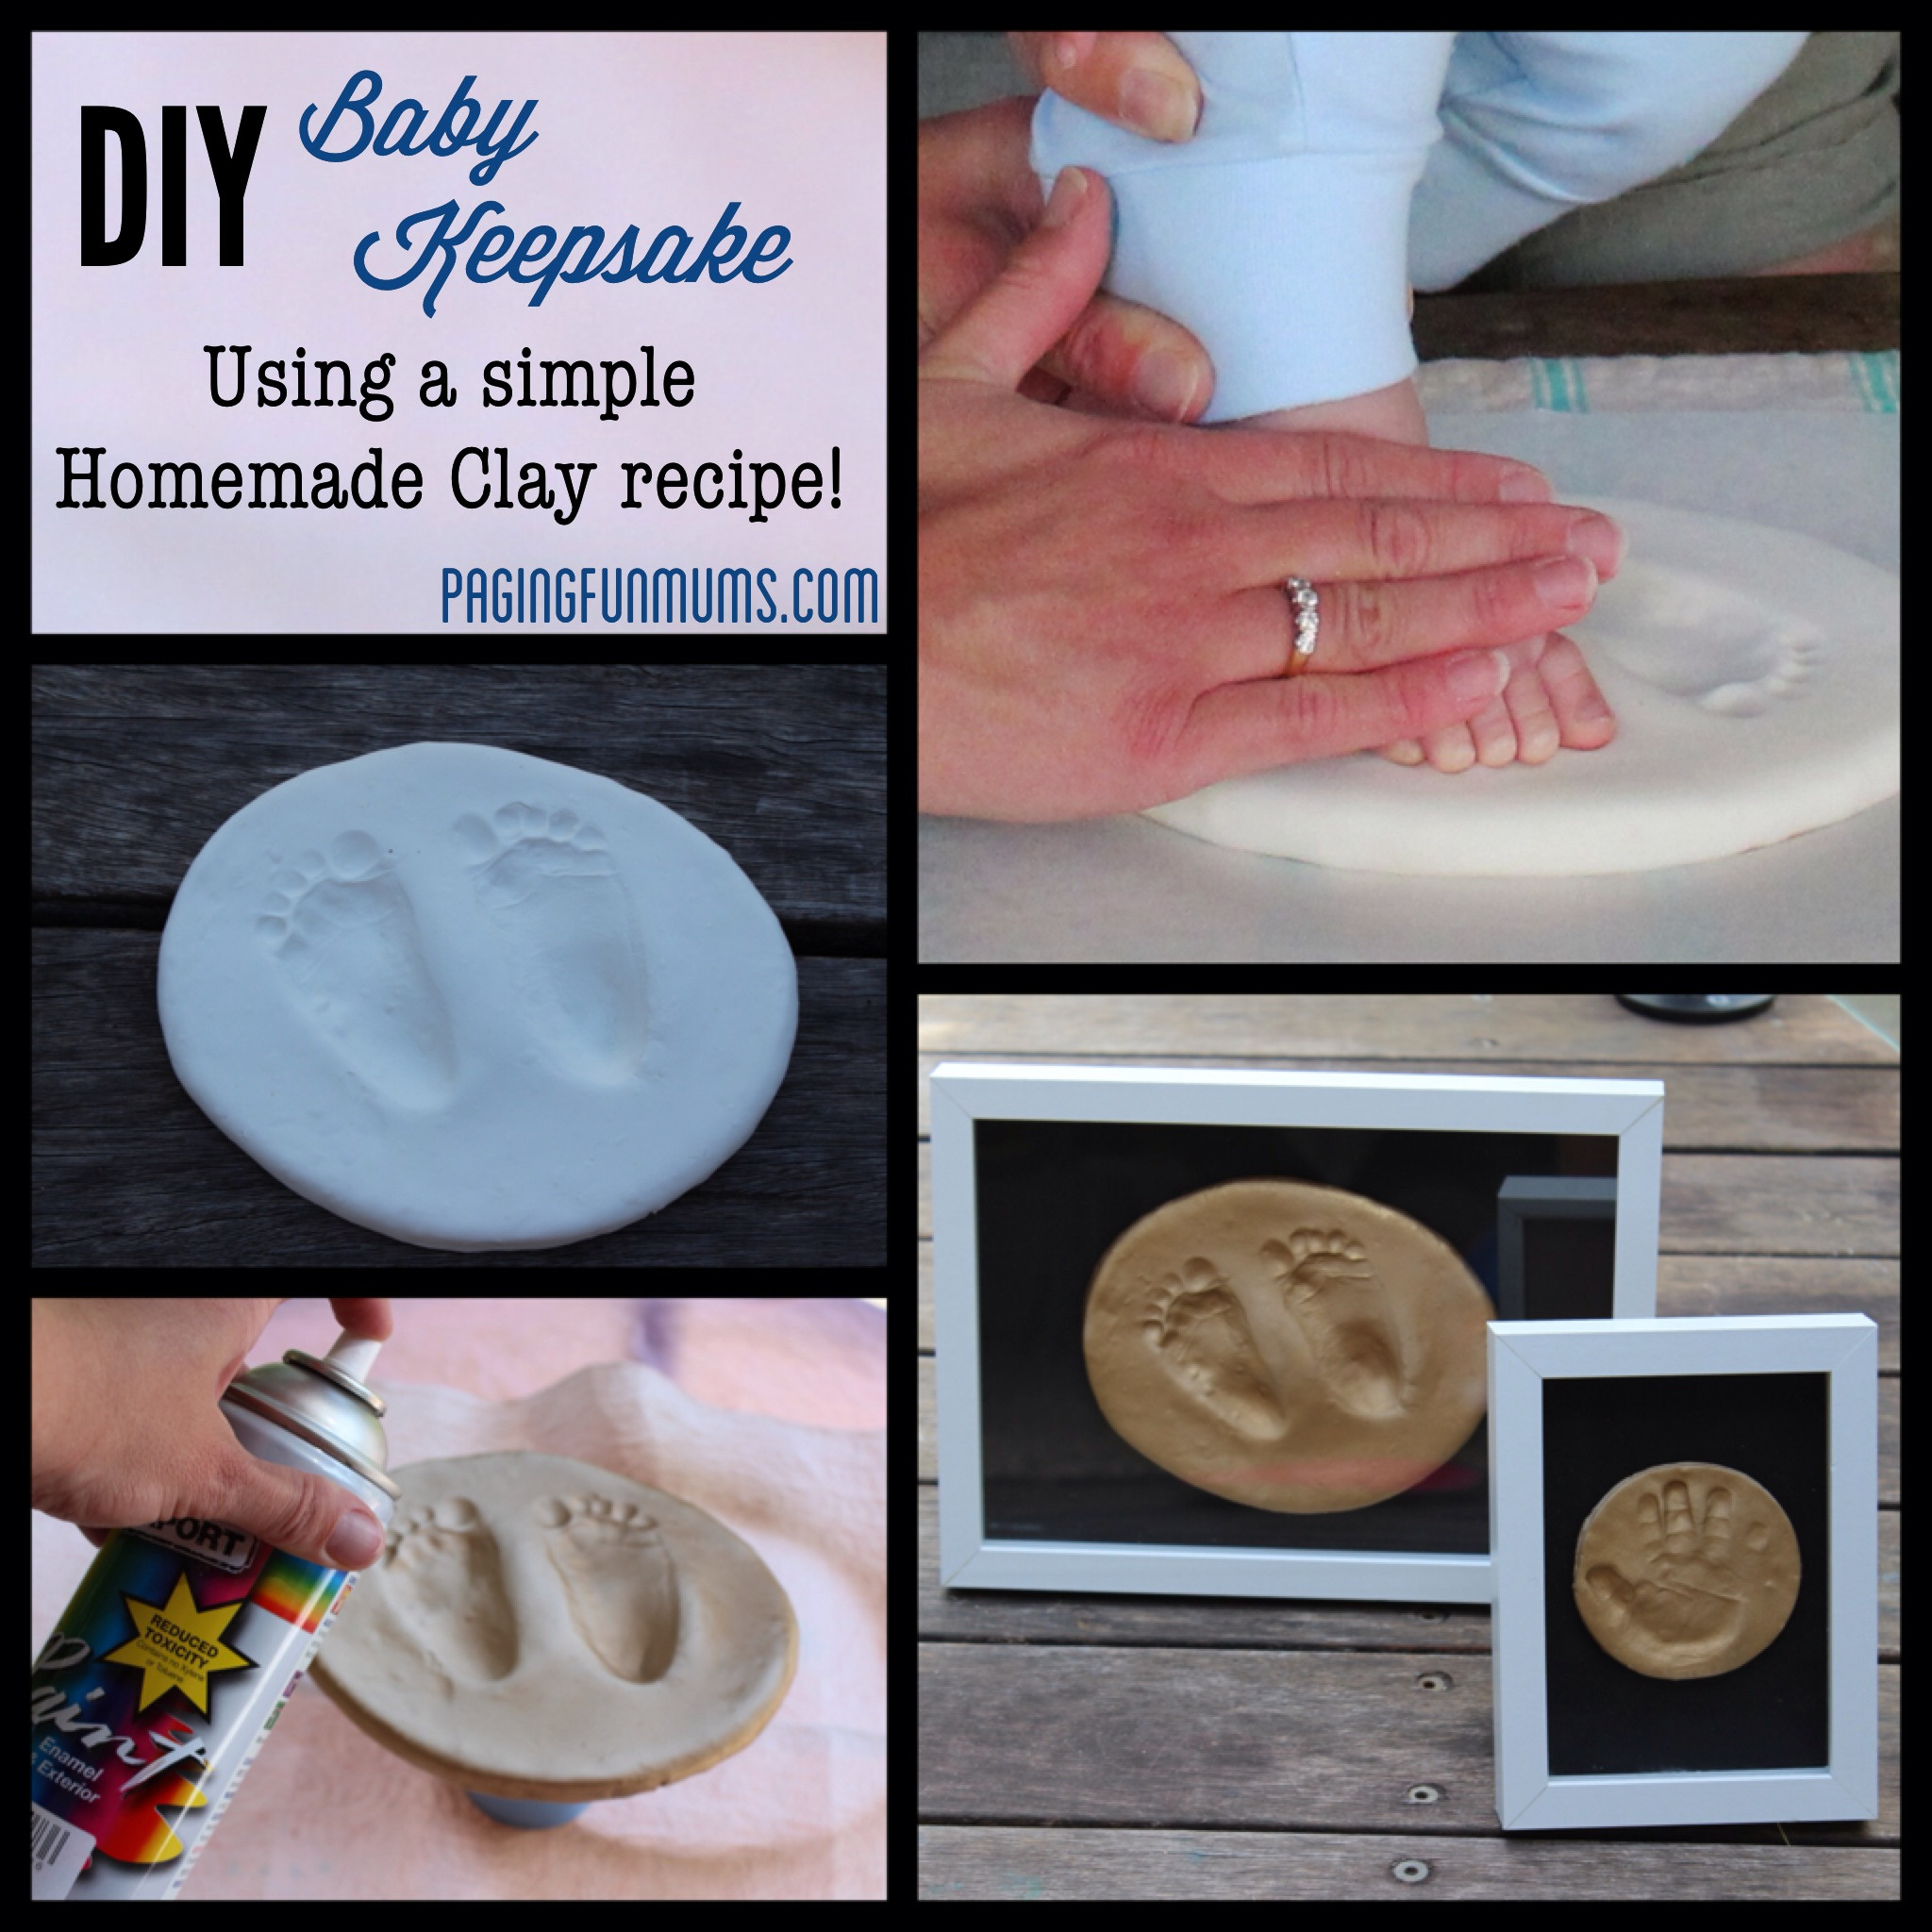 DIY Baby Handprints
 DIY Baby Keepsake using Homemade Clay Paging Fun Mums